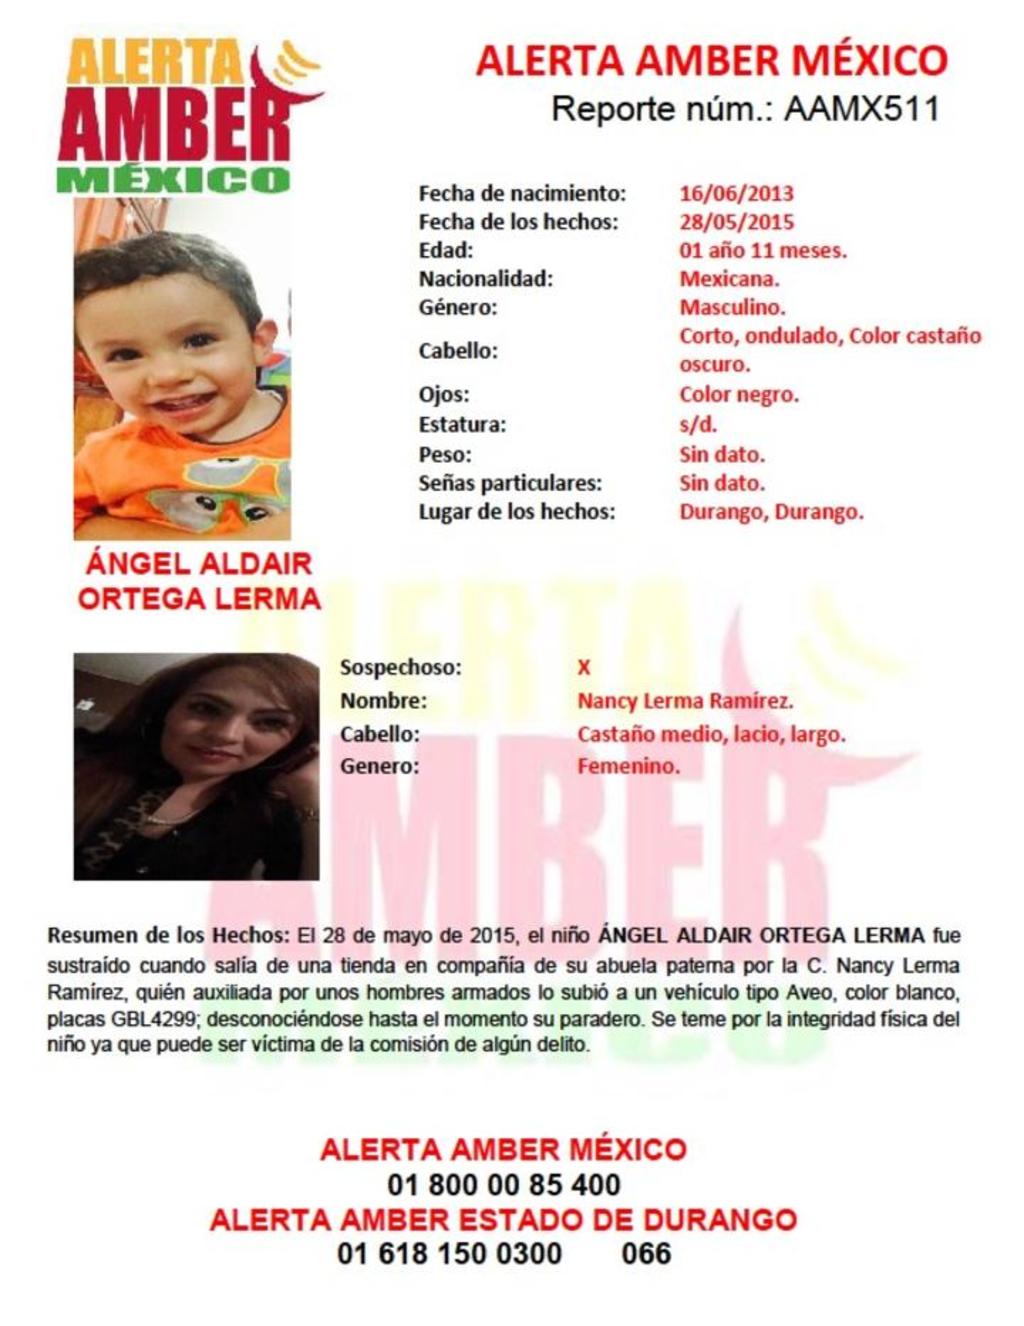 Los hechos, de acuerdo con la información de las autoridades, ocurrieron el jueves pasado cuando el niño Ángel Aldair fue sustraído al salir de una tienda de la mano de su abuela paterna.